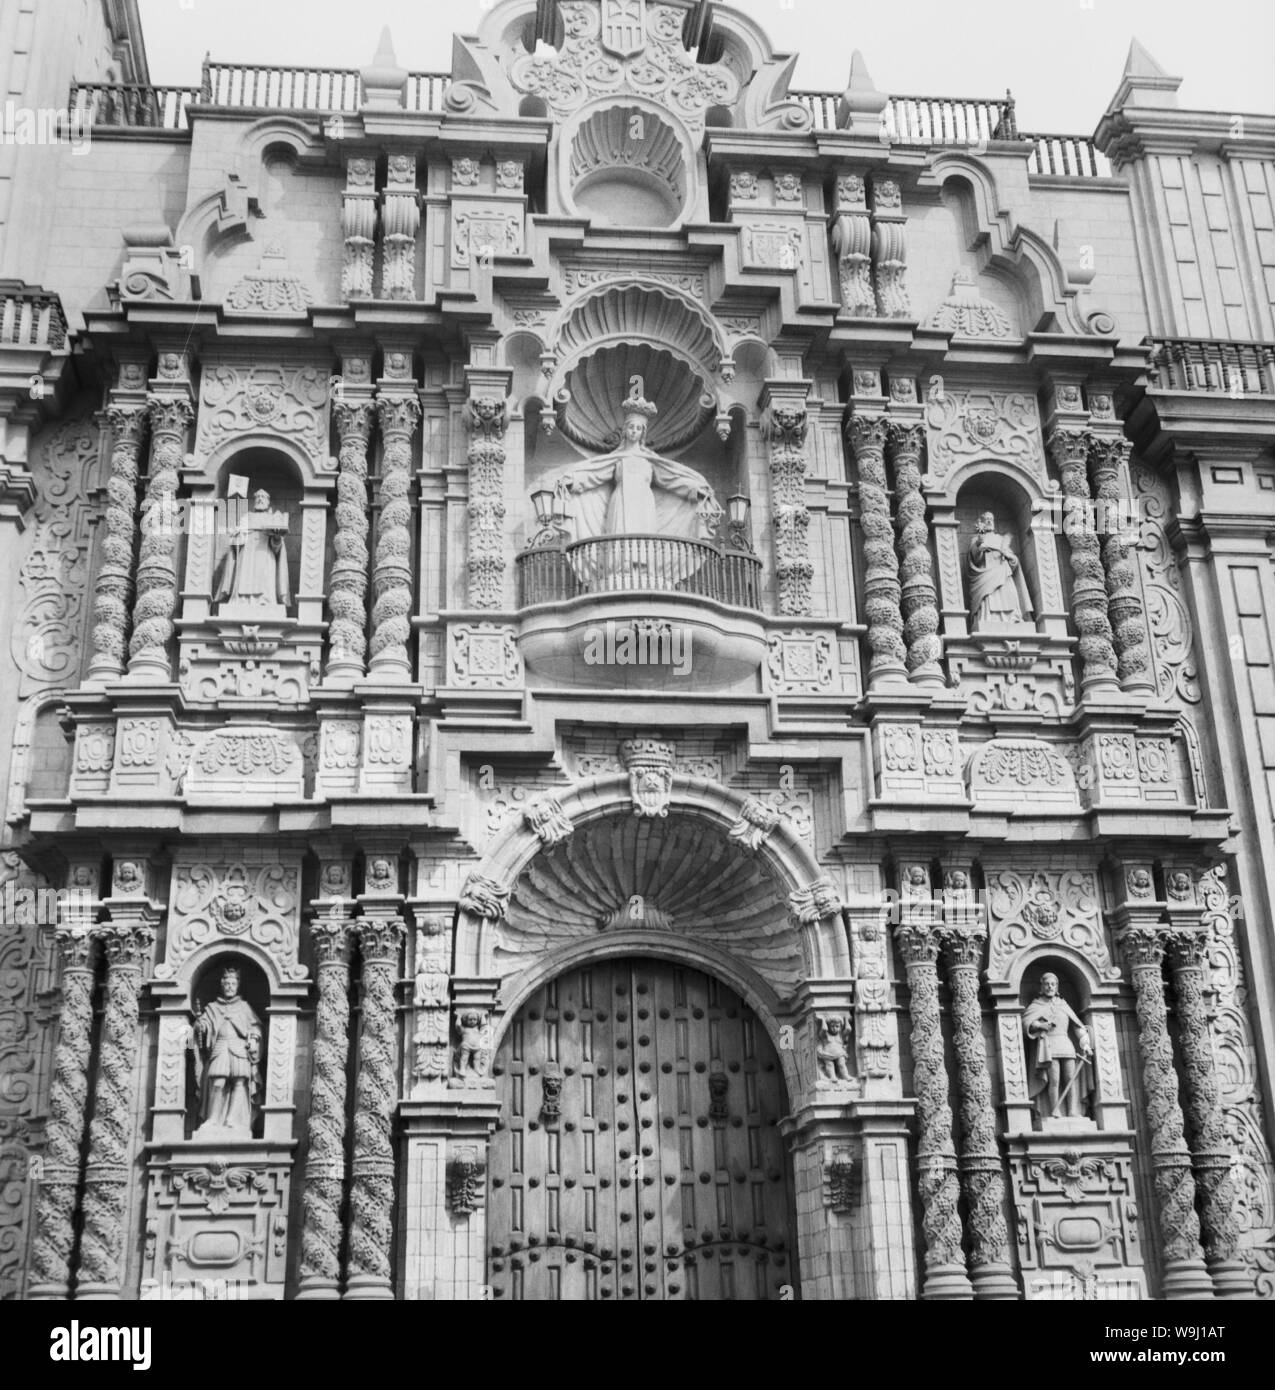 Eingang zu einer Kirche mit der Heiligen Jungfrau Maria au Pérou, 1960 er Jahre. Entrée d'une église de la Sainte Vierge Marie au Pérou, 1960. Banque D'Images